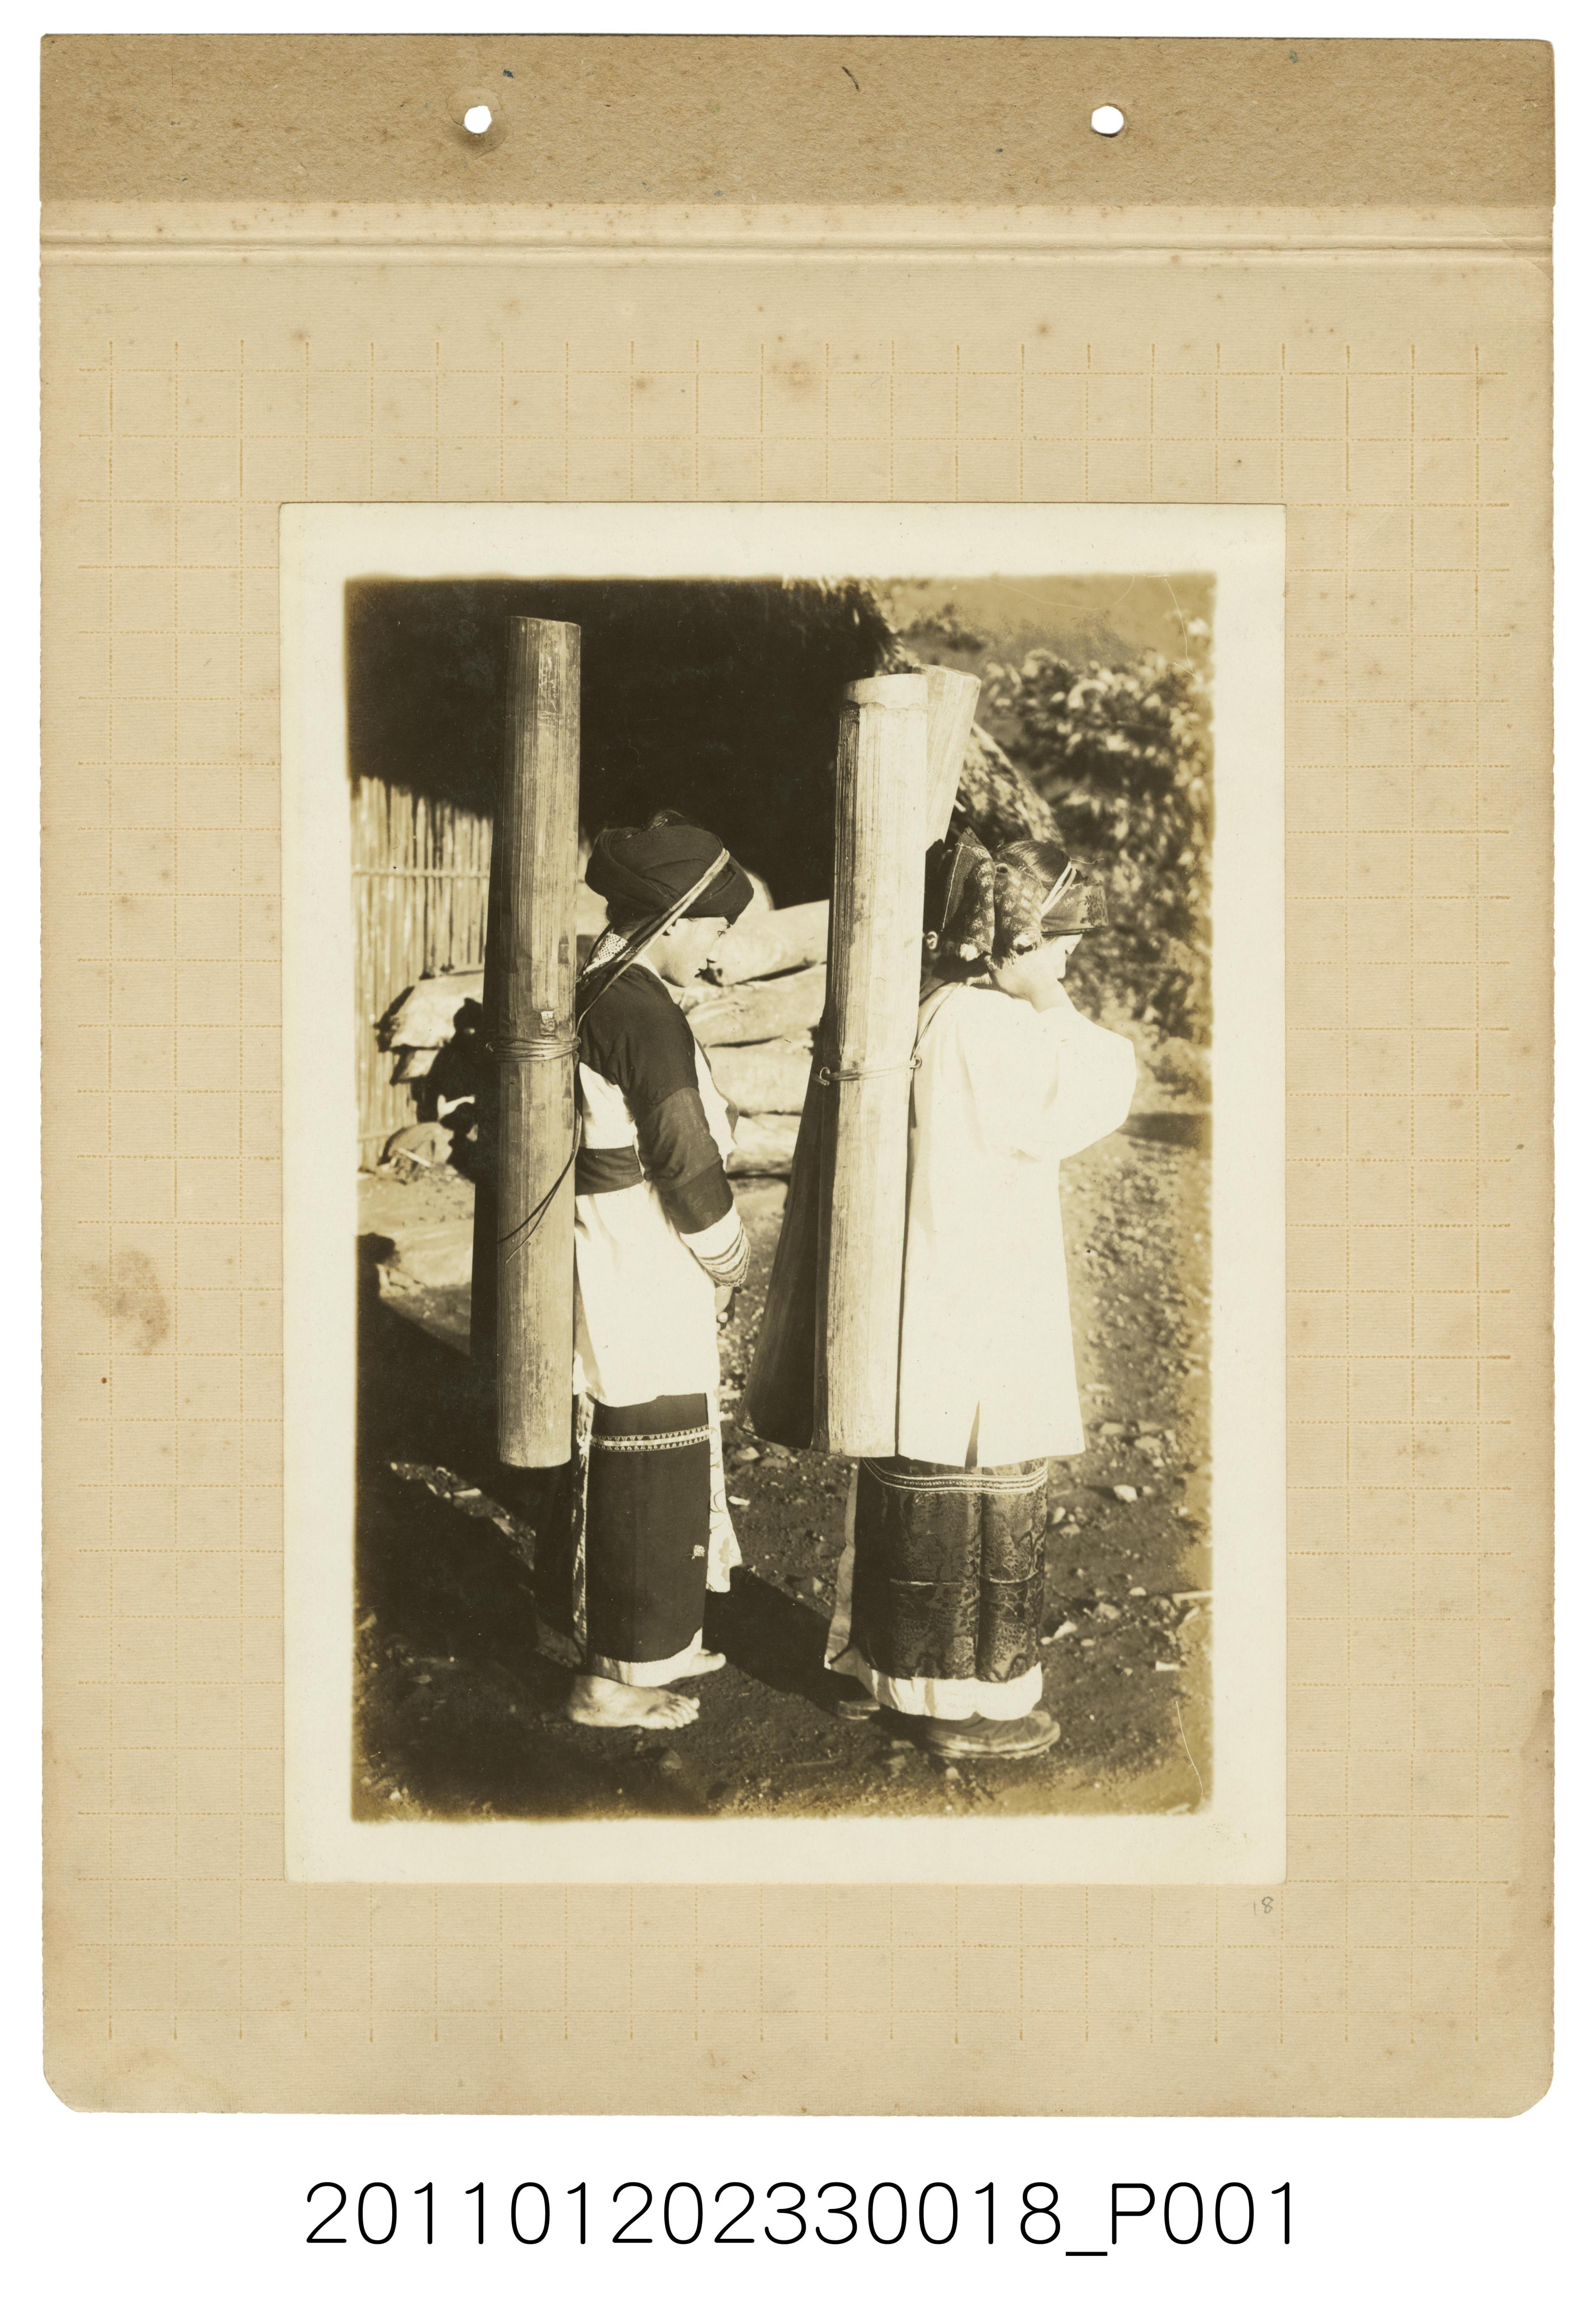 阿里山達邦族女性汲水照 (共1張)